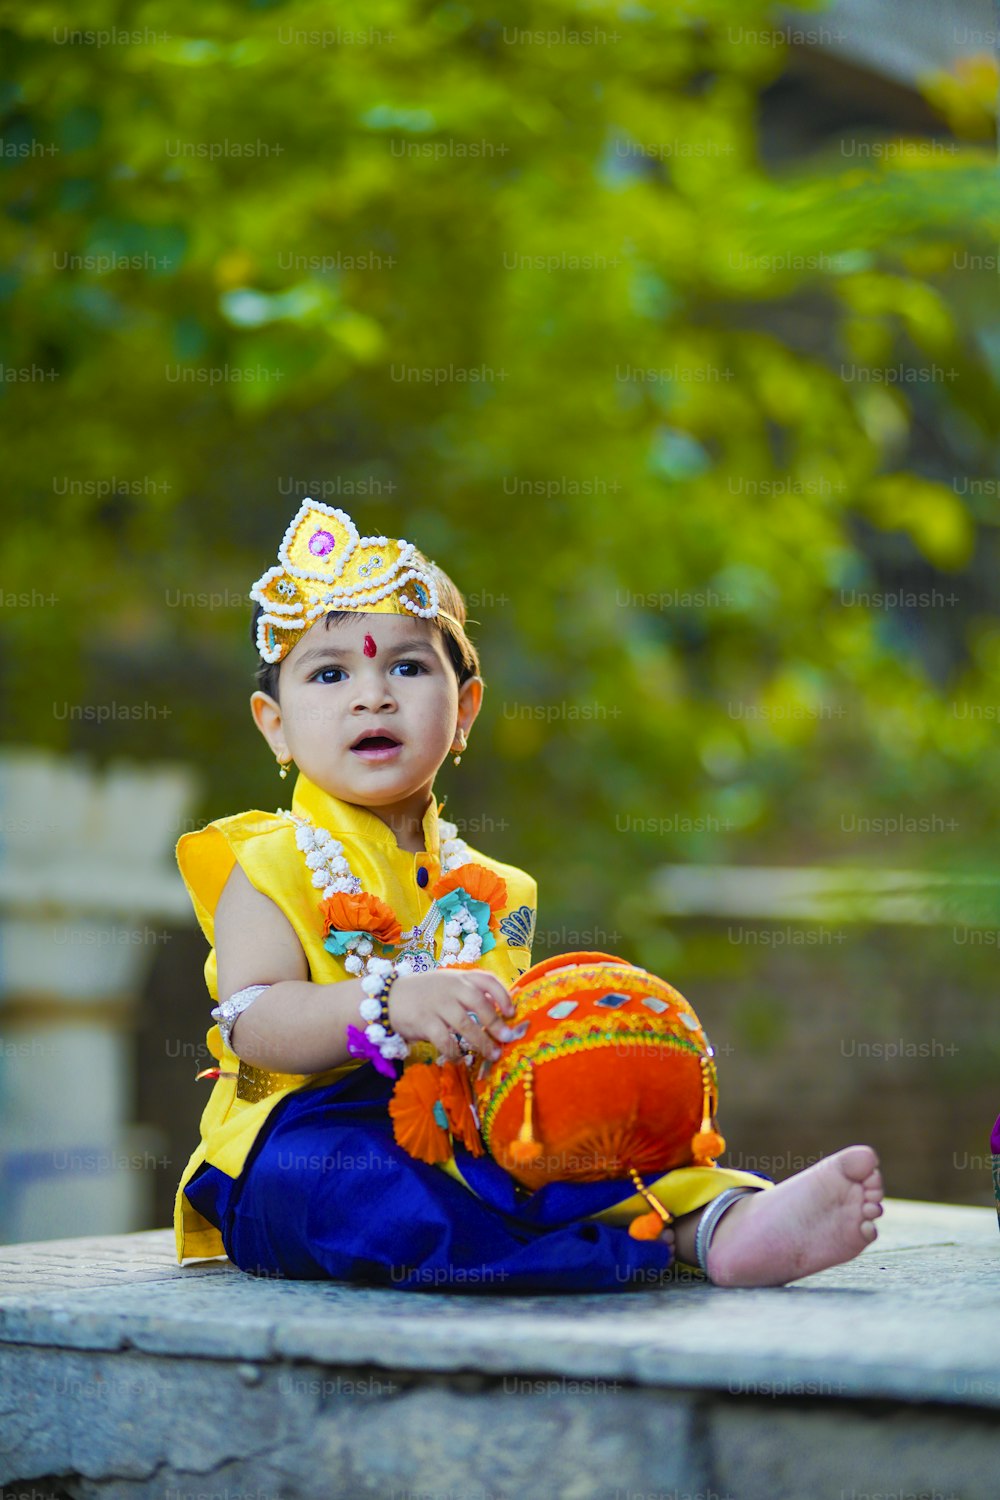 felice biglietto di auguri Janmashtami che mostra un piccolo ragazzo indiano in posa come Shri krishna o kanha / kanhaiya con l'immagine di Dahi Handi e fiori colorati.